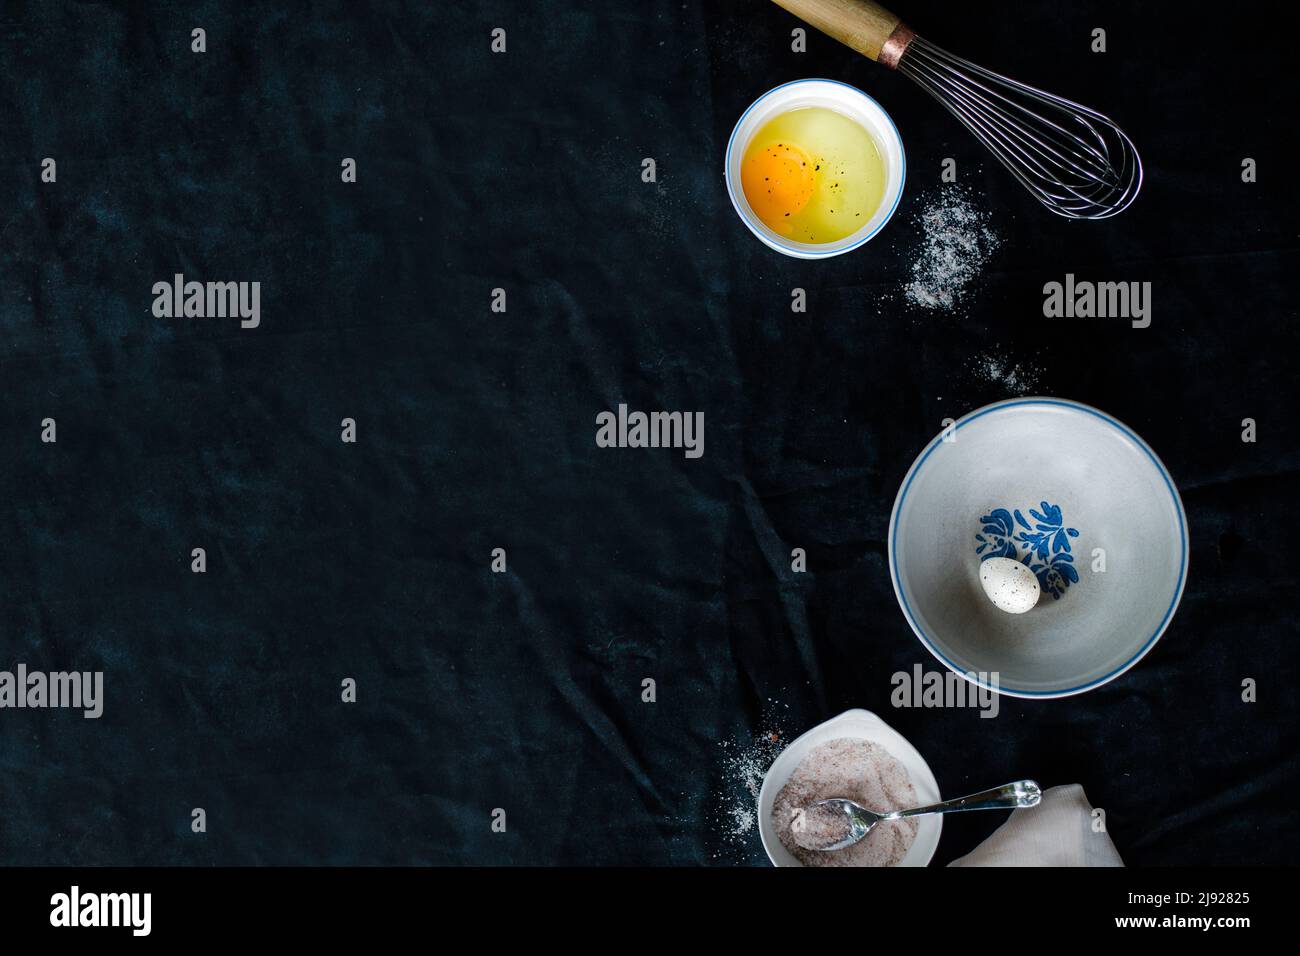 Eier und Eierschalen auf dunklem Hintergrund, umgeben von Schüsseln und einem Schneebesen Stockfoto